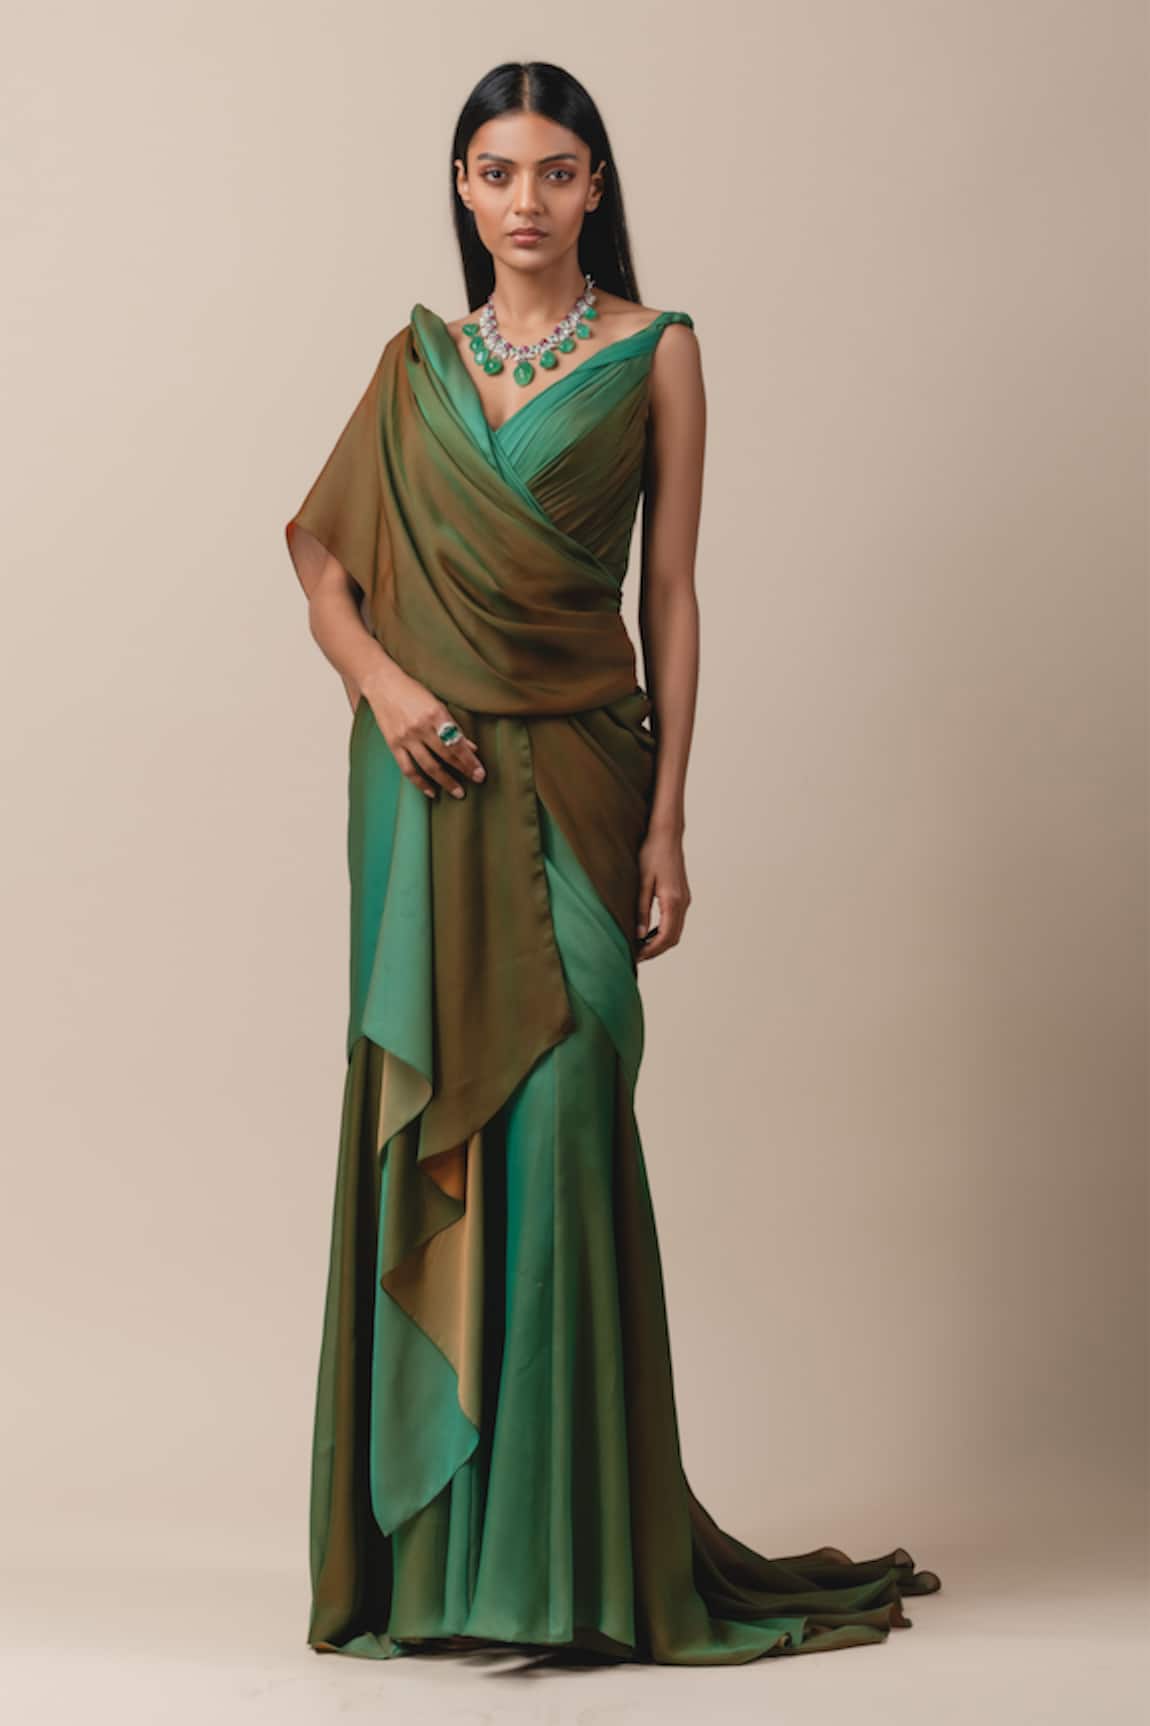 Tarun Tahiliani Draped Saree Gown